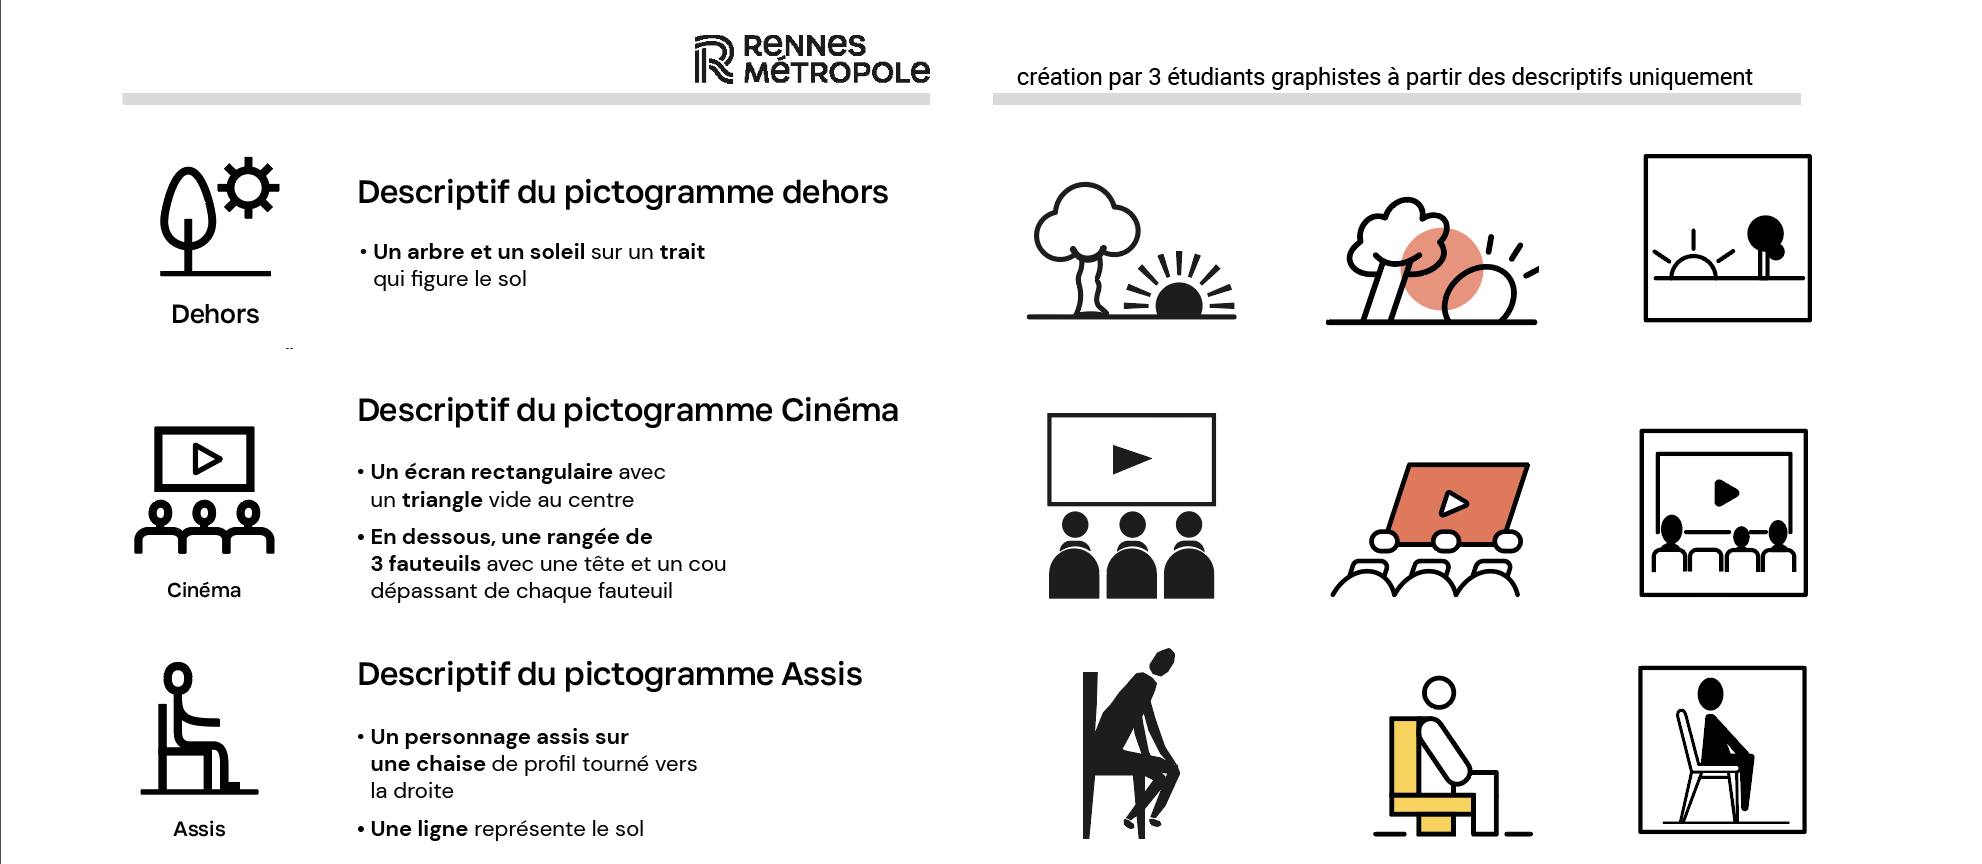 Déclinaison des pictogrammes dehors, cinéma, assis, par 3 graphistes uniquement à partir des descriptifs imaginés par le groupe picto de la Direction culture de Rennes et sa métropole.